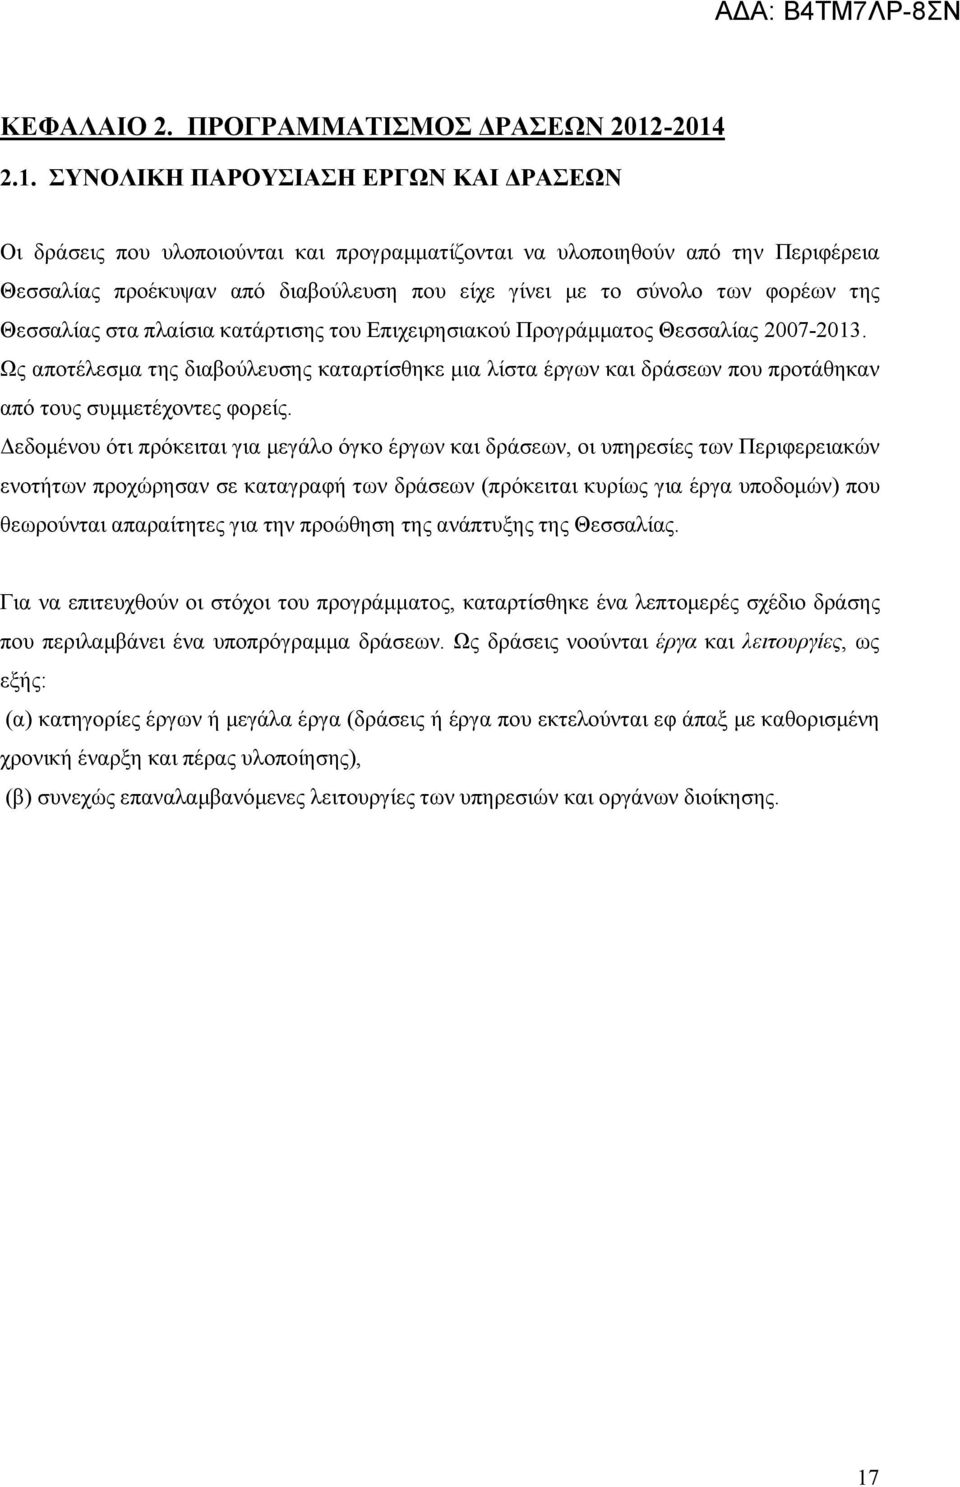 των φορέων της Θεσσαλίας στα πλαίσια κατάρτισης του Επιχειρησιακού Προγράμματος Θεσσαλίας 2007-2013.